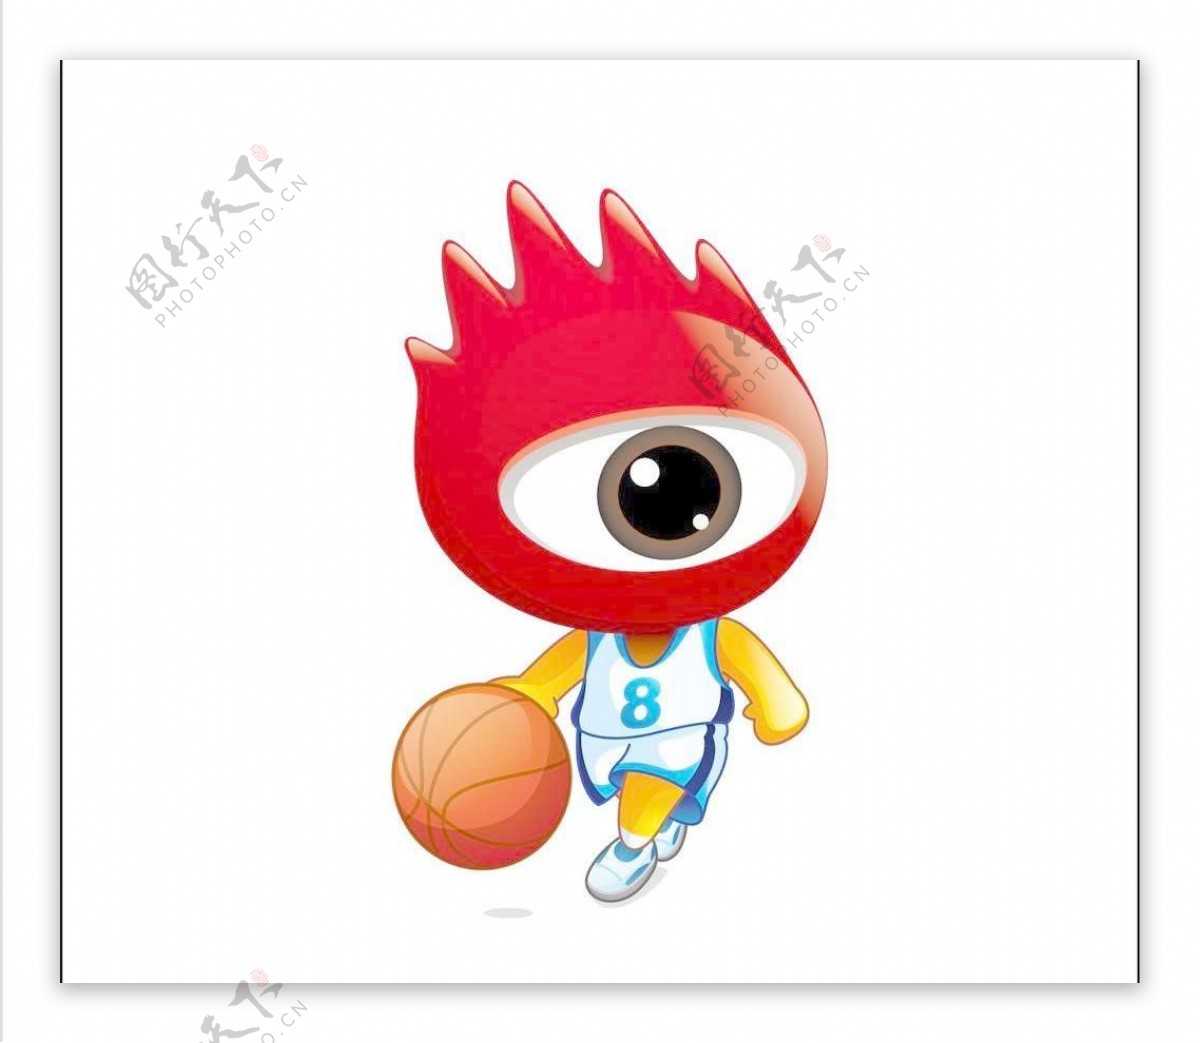 2008北京奥运男子篮球小浪人矢量素材2图片